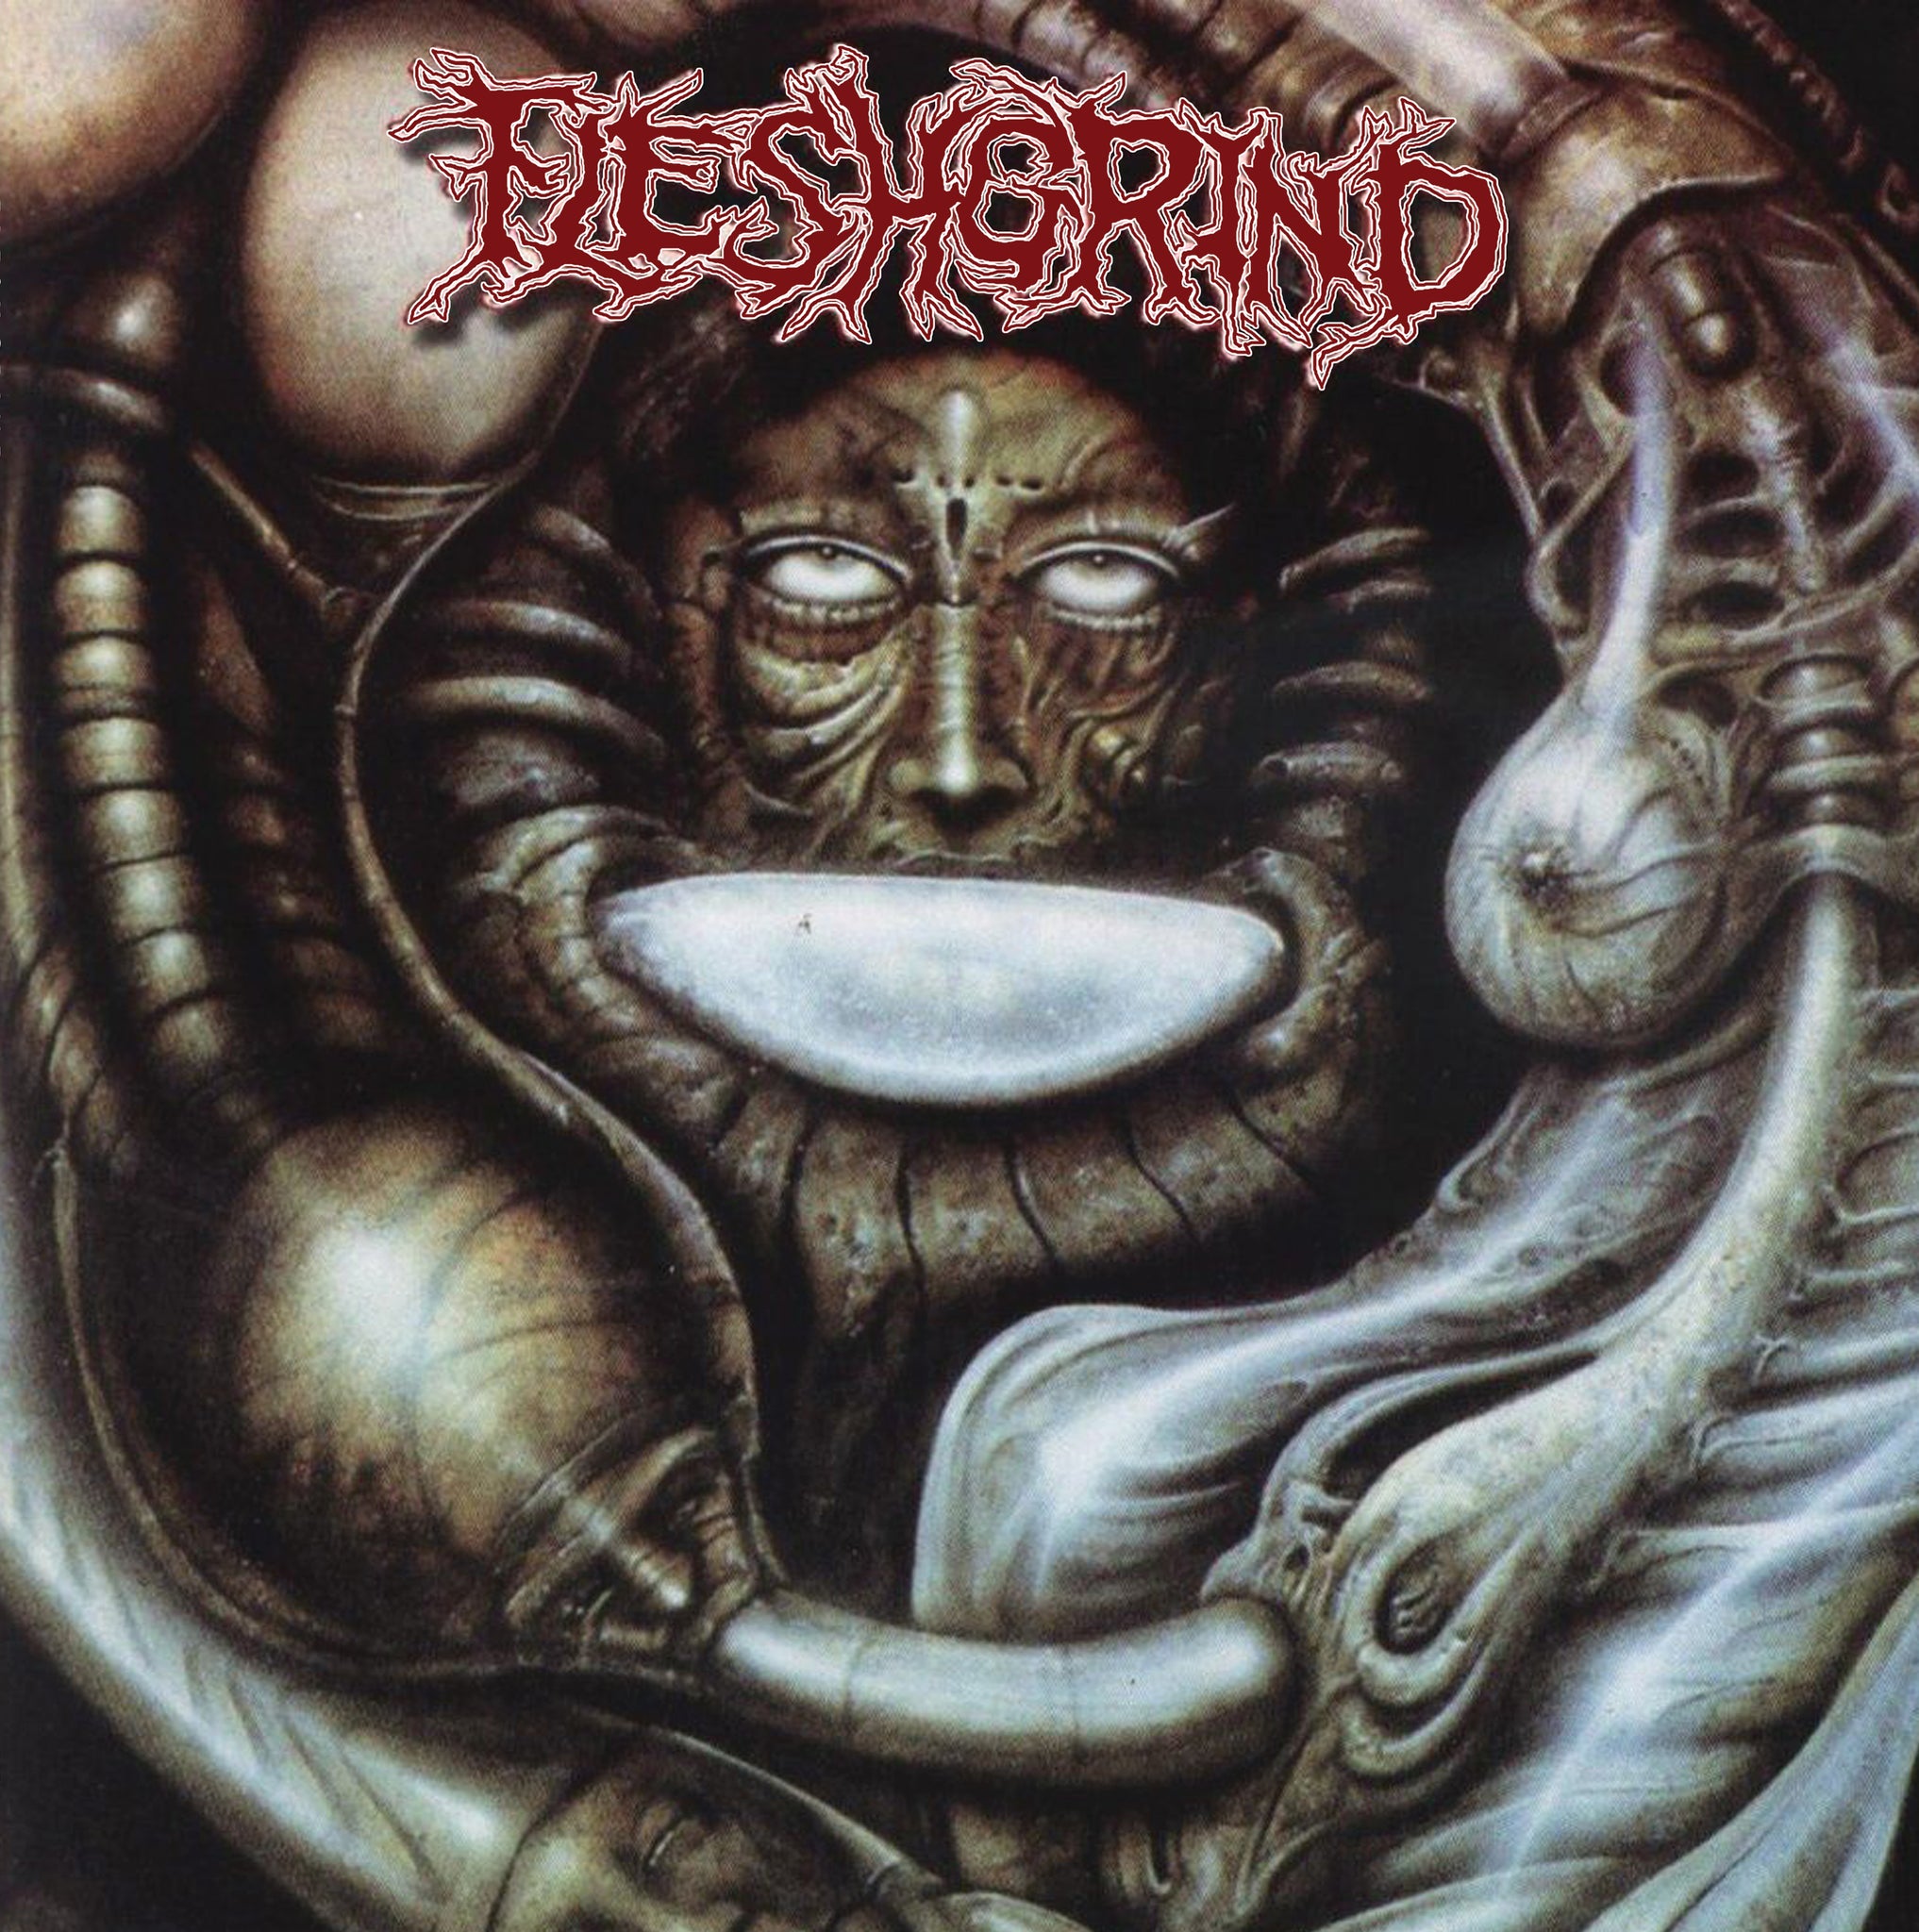 FLESHGRIND - Destined For Defilement - LP